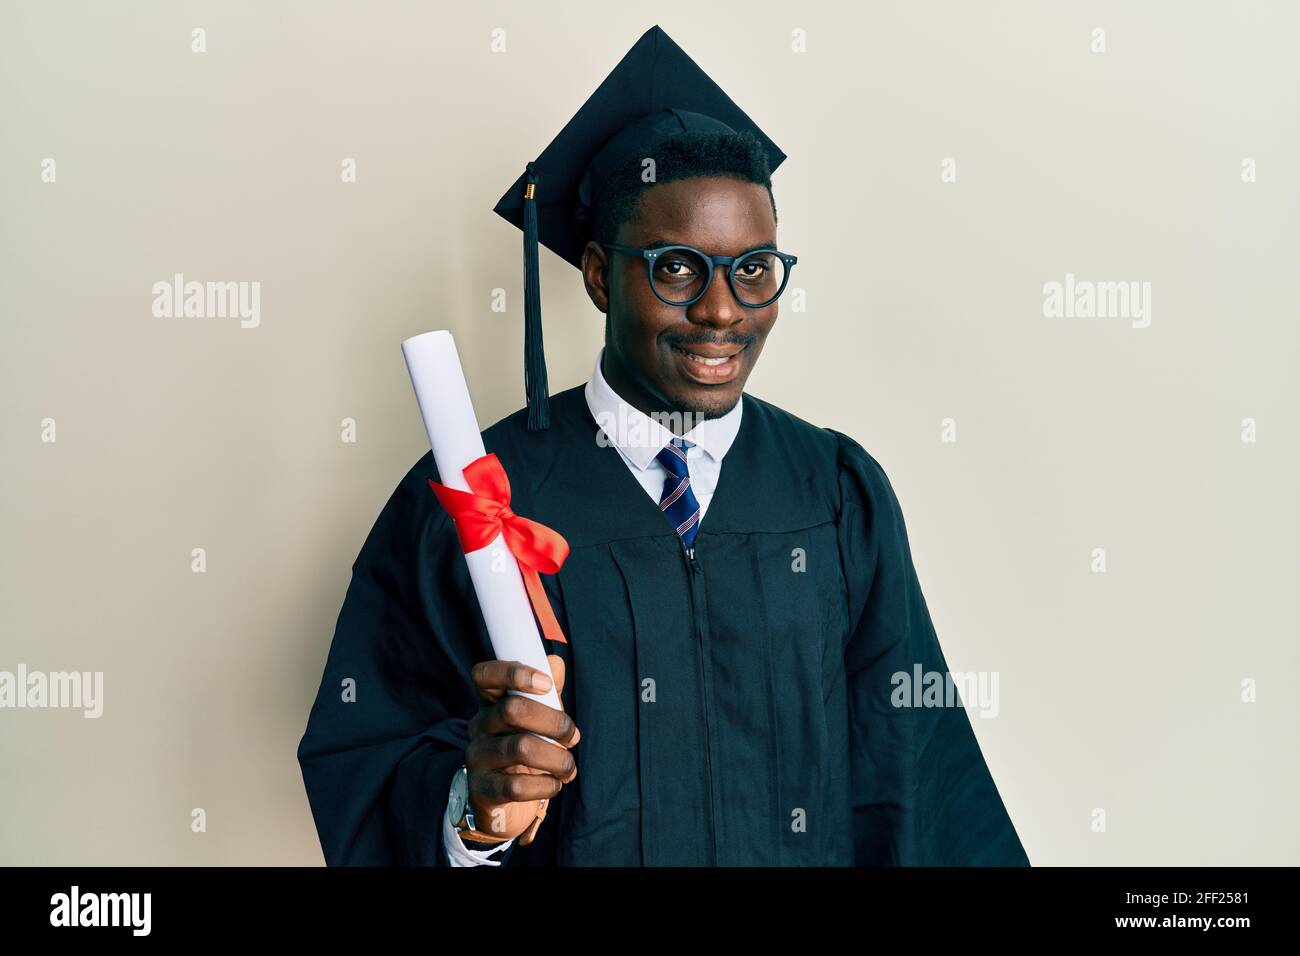 Beau homme noir portant une casquette de remise des diplômes et une robe de  cérémonie tenue diplôme ayant l'air positif et heureux debout et souriant  avec un sourire confiant, sho Photo Stock -